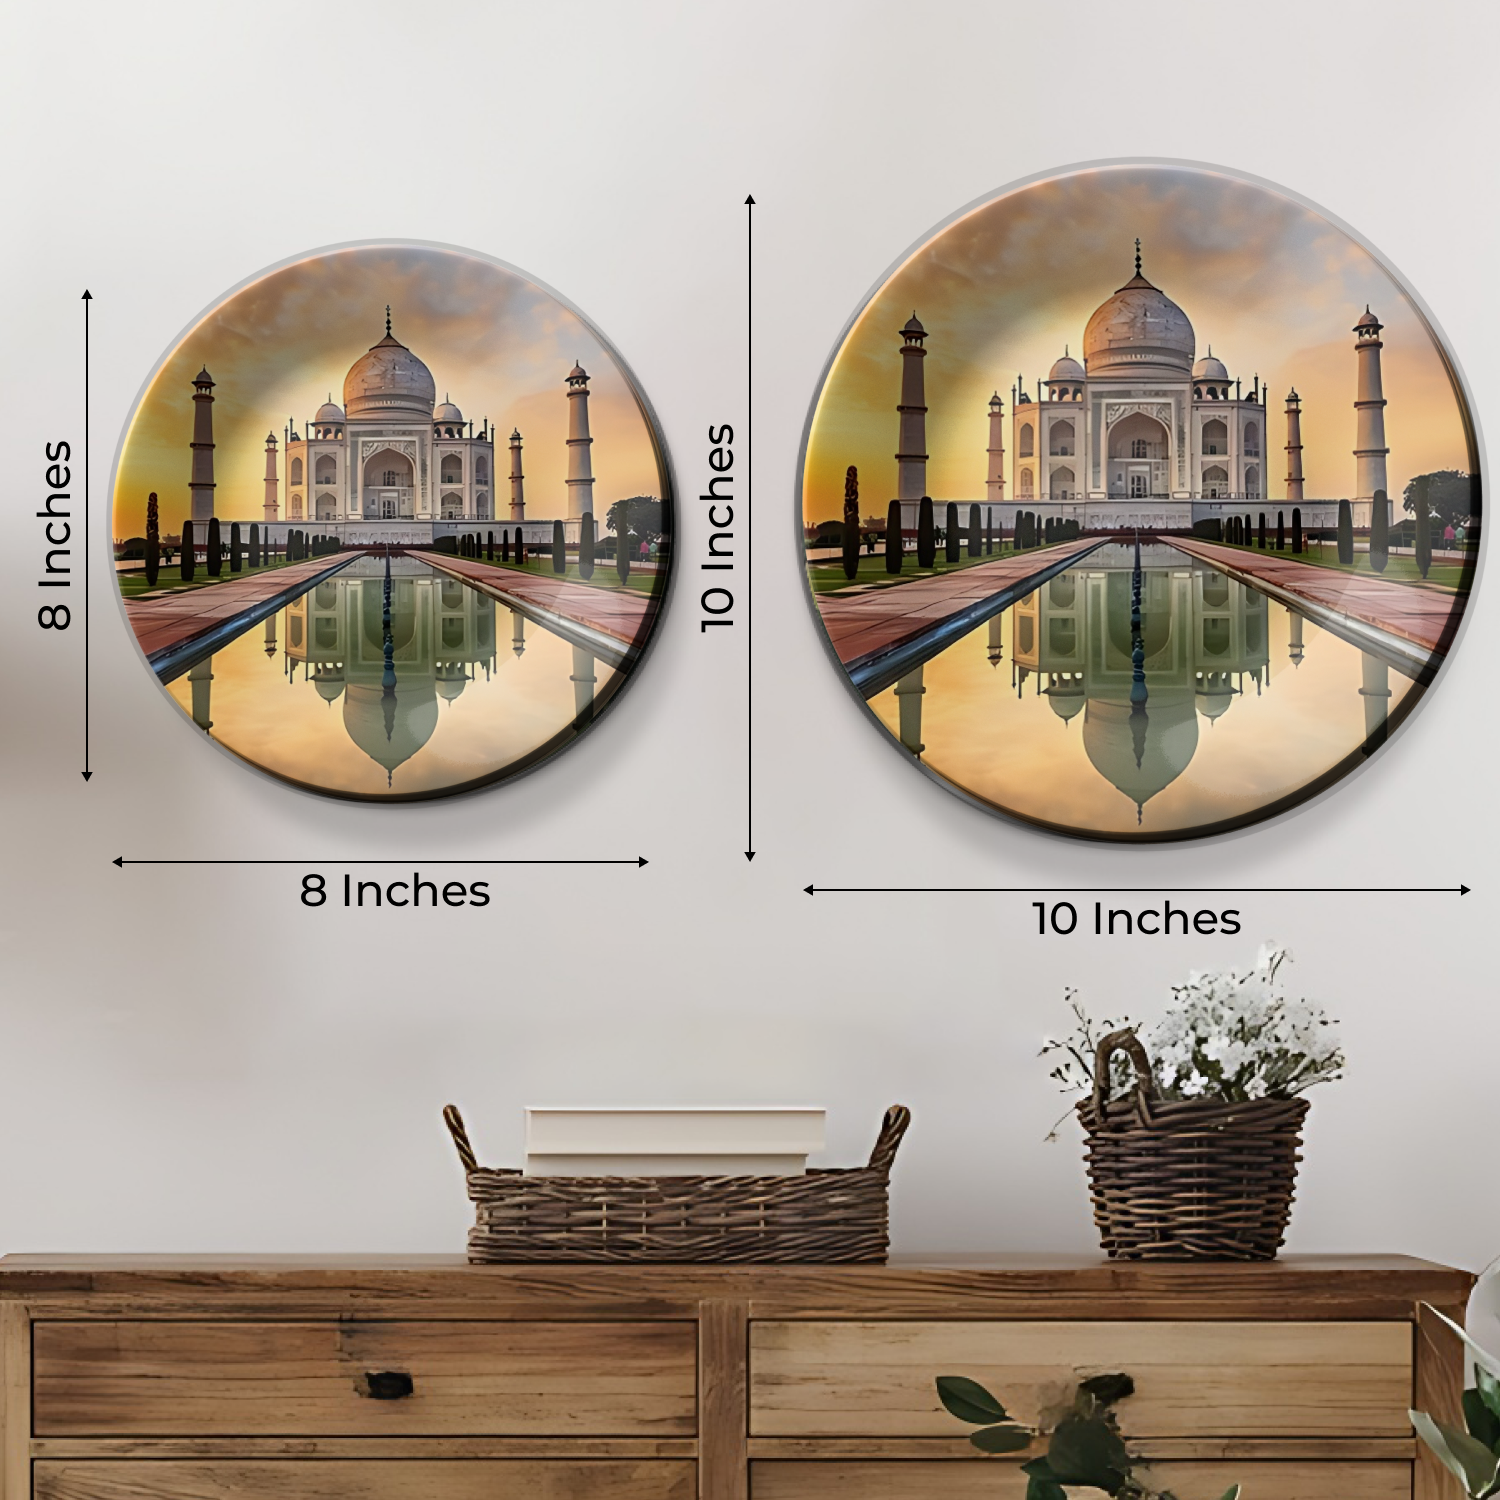 Taj Mahal decorative wall plates